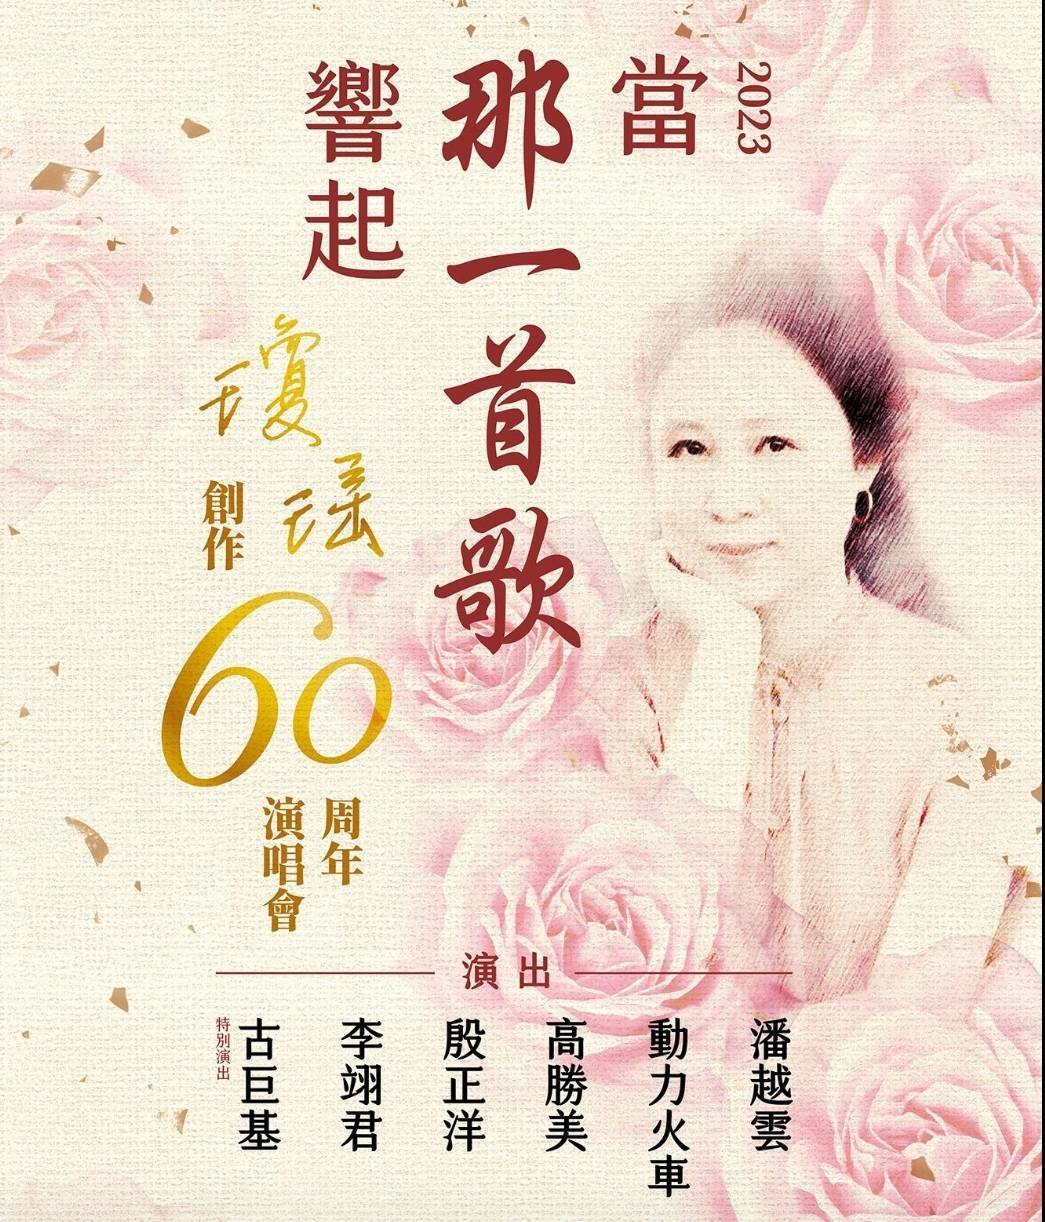 瓊瑤創作60週年  6組歌手開唱喚起青春記憶